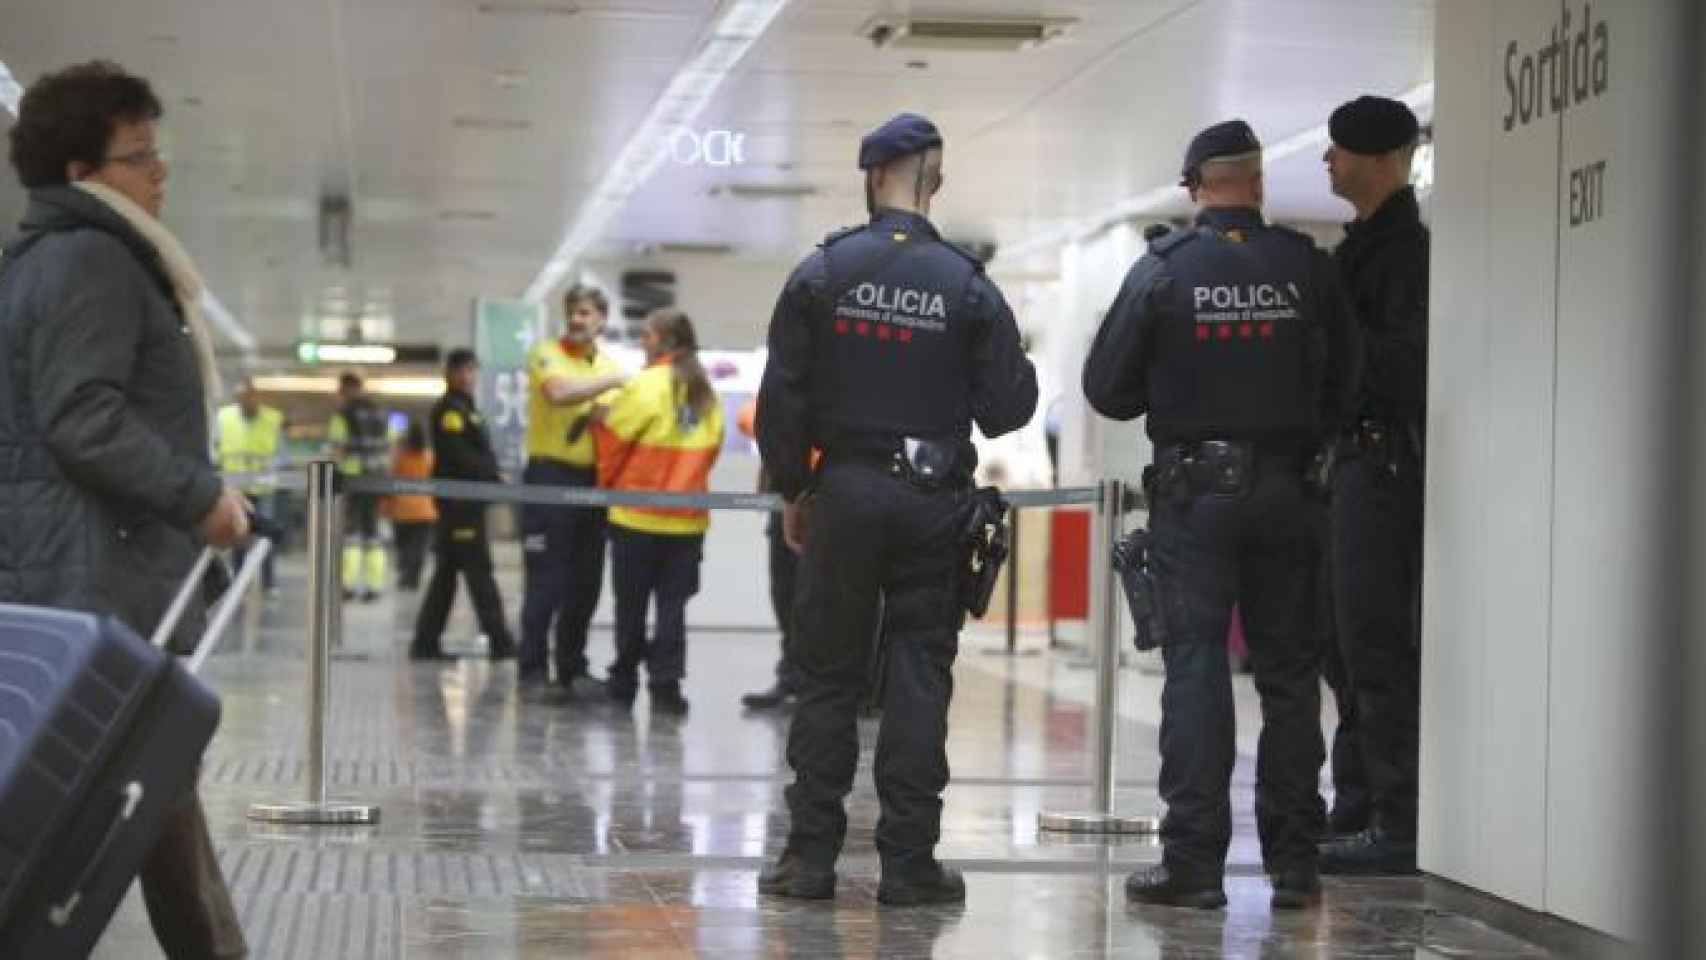 Mossos d'Esquadra en la Estación de Sants de Barcelona tras la falsa alerta terrorista que provocó una hebilla en forma de granada / EFE